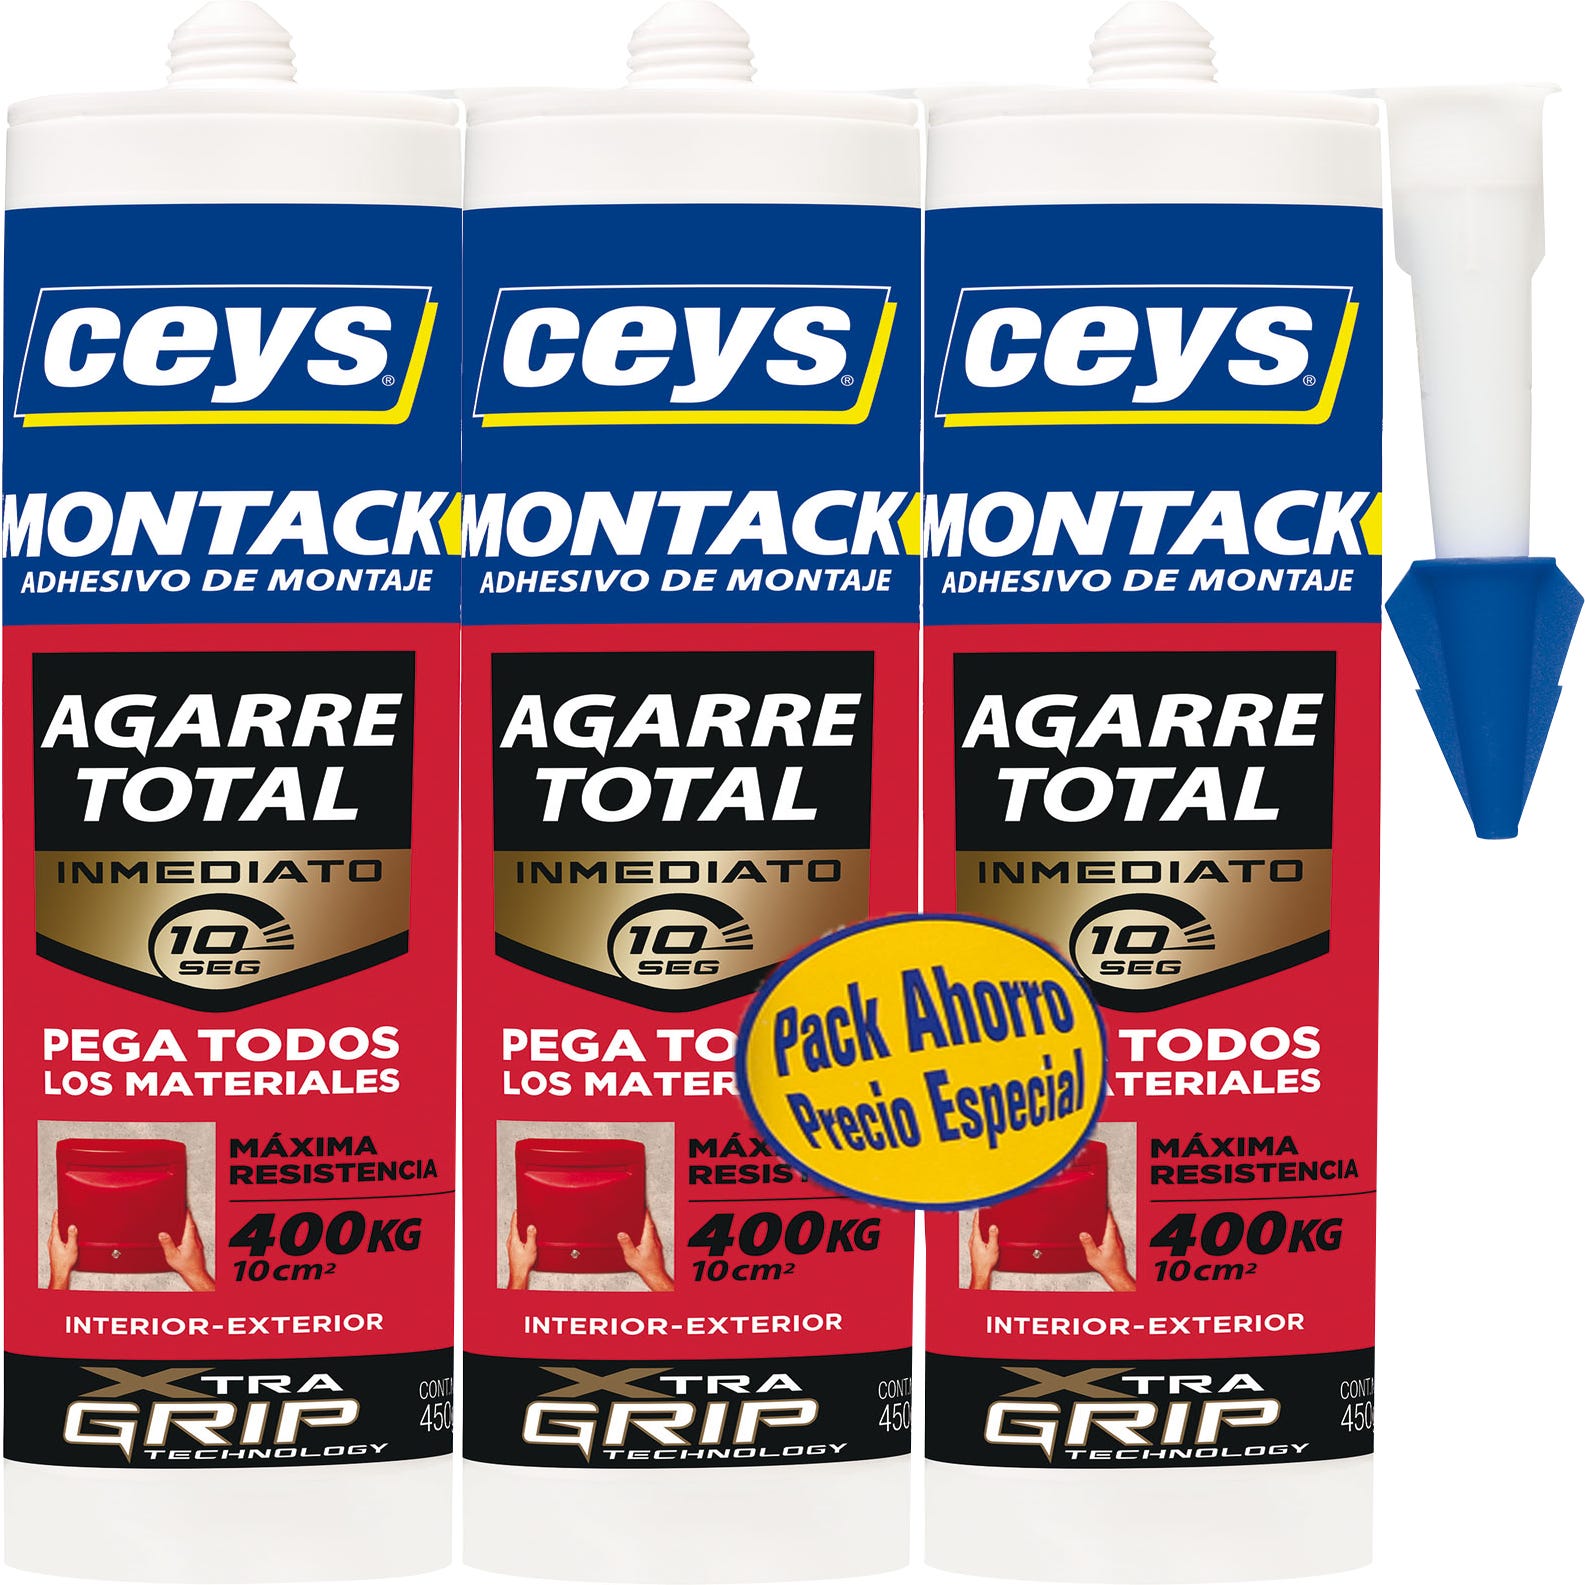 Ceys Montack es un adhesivo de montaje de AGARRE TOTAL INMEDIATO para fijar  de forma RESISTENTE y FÁCIL., By IDEAL Bricolaje